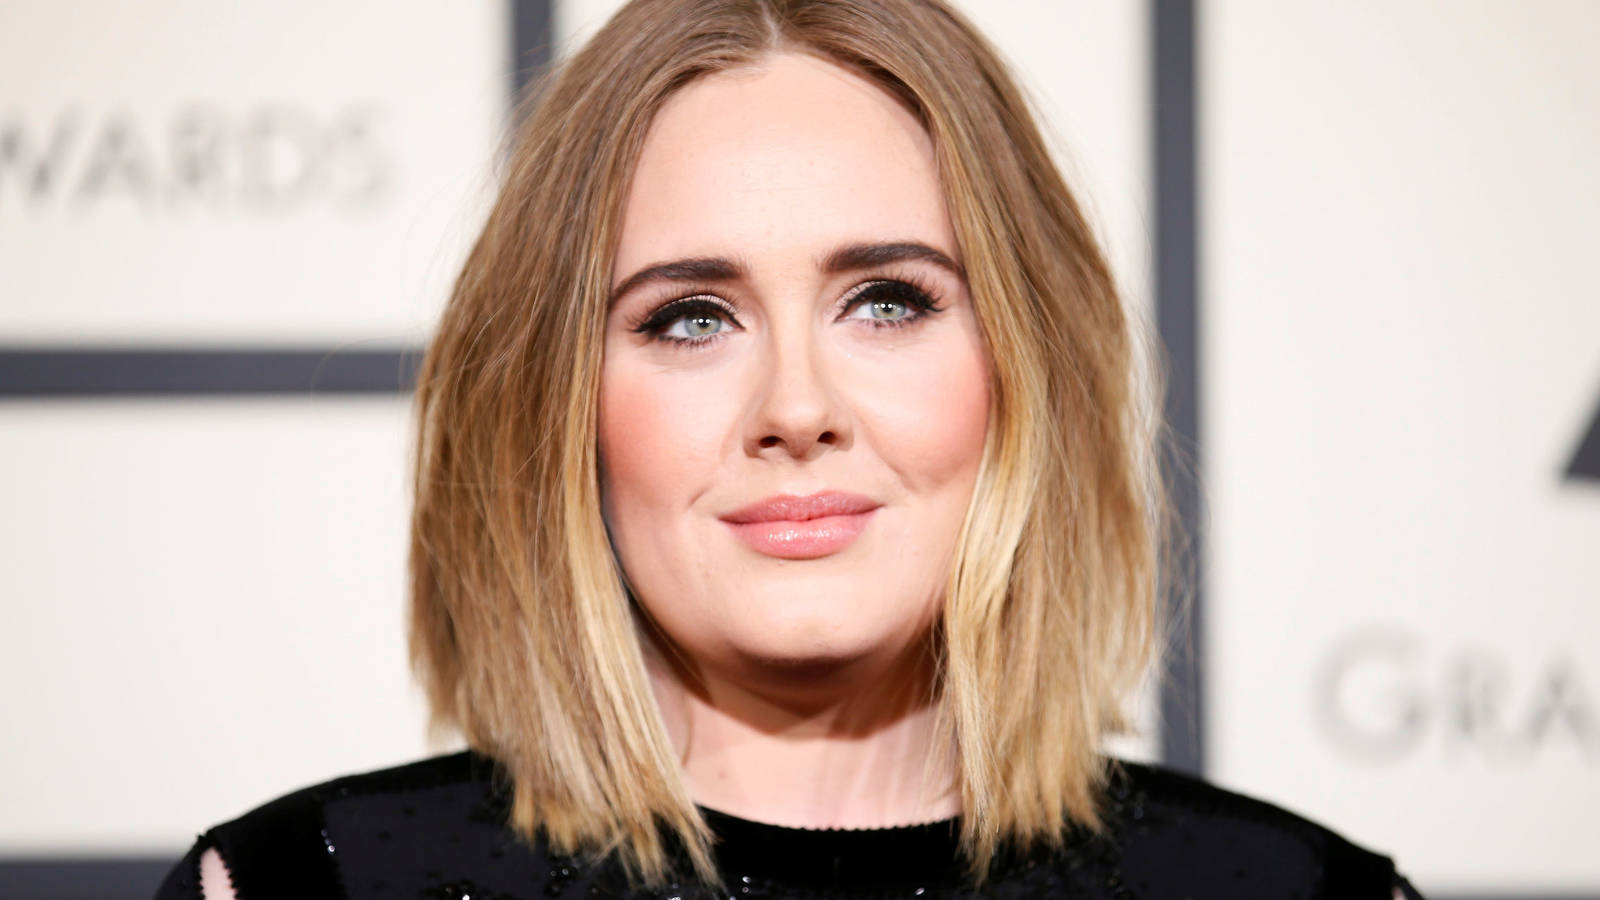 La última foto de Adele te dejará boquiabierto con su radical cambio de look